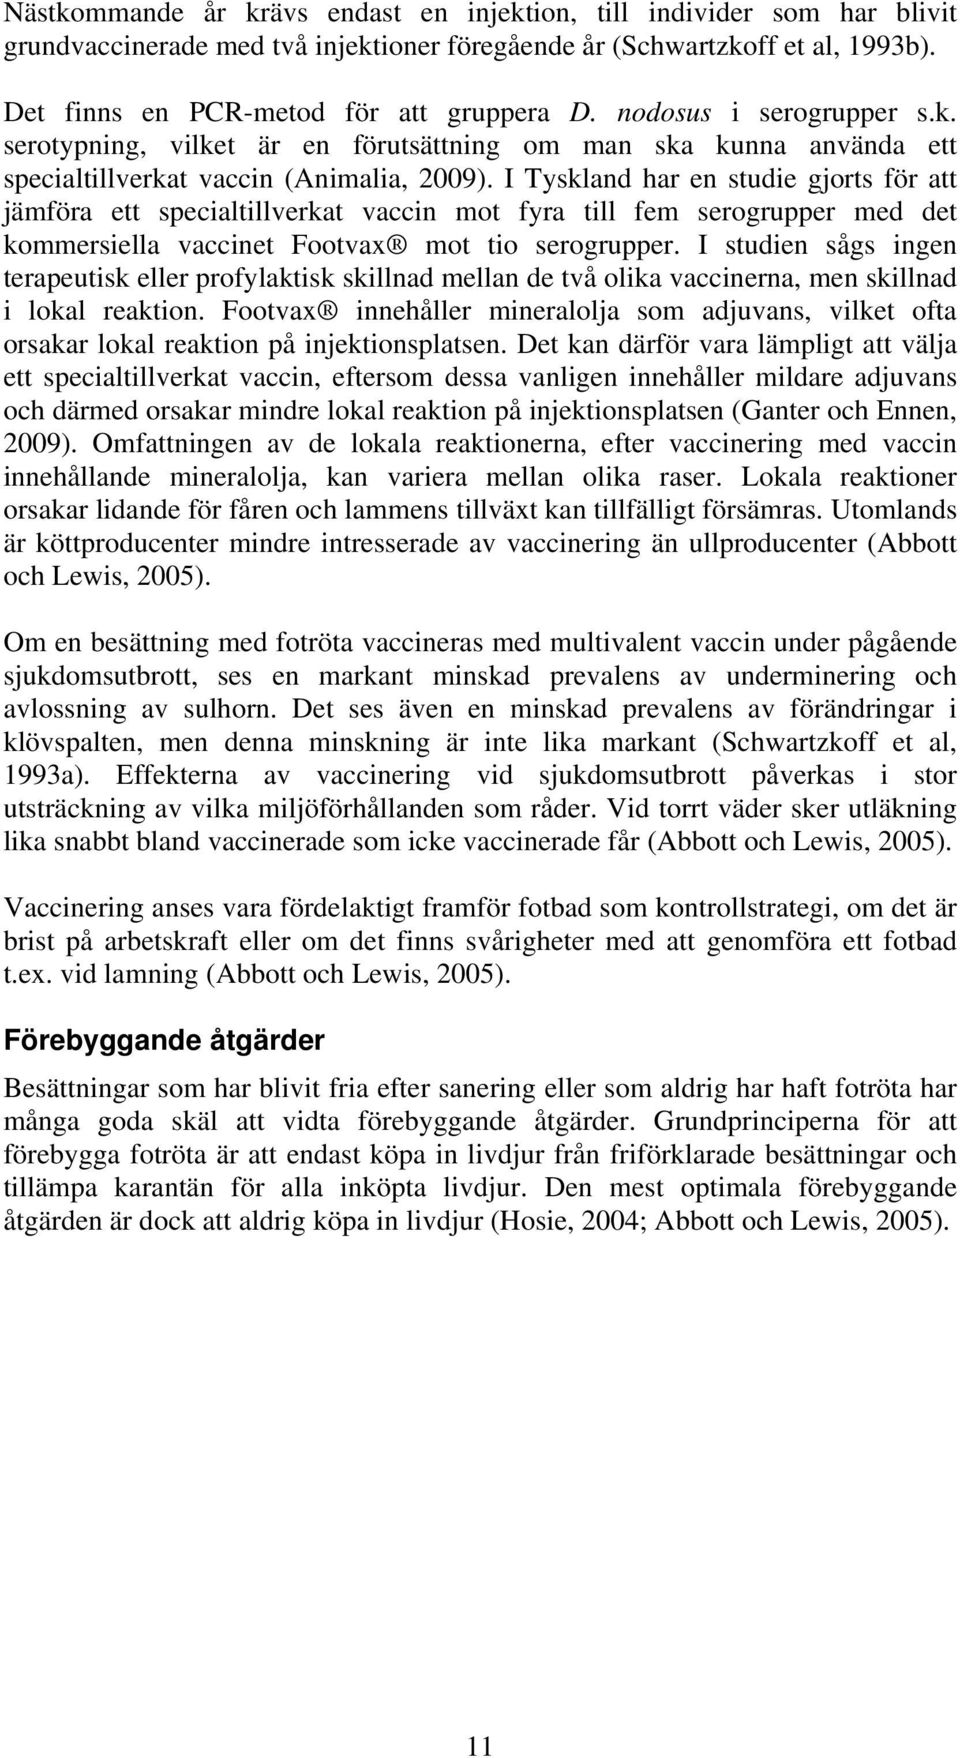 I Tyskland har en studie gjorts för att jämföra ett specialtillverkat vaccin mot fyra till fem serogrupper med det kommersiella vaccinet Footvax mot tio serogrupper.